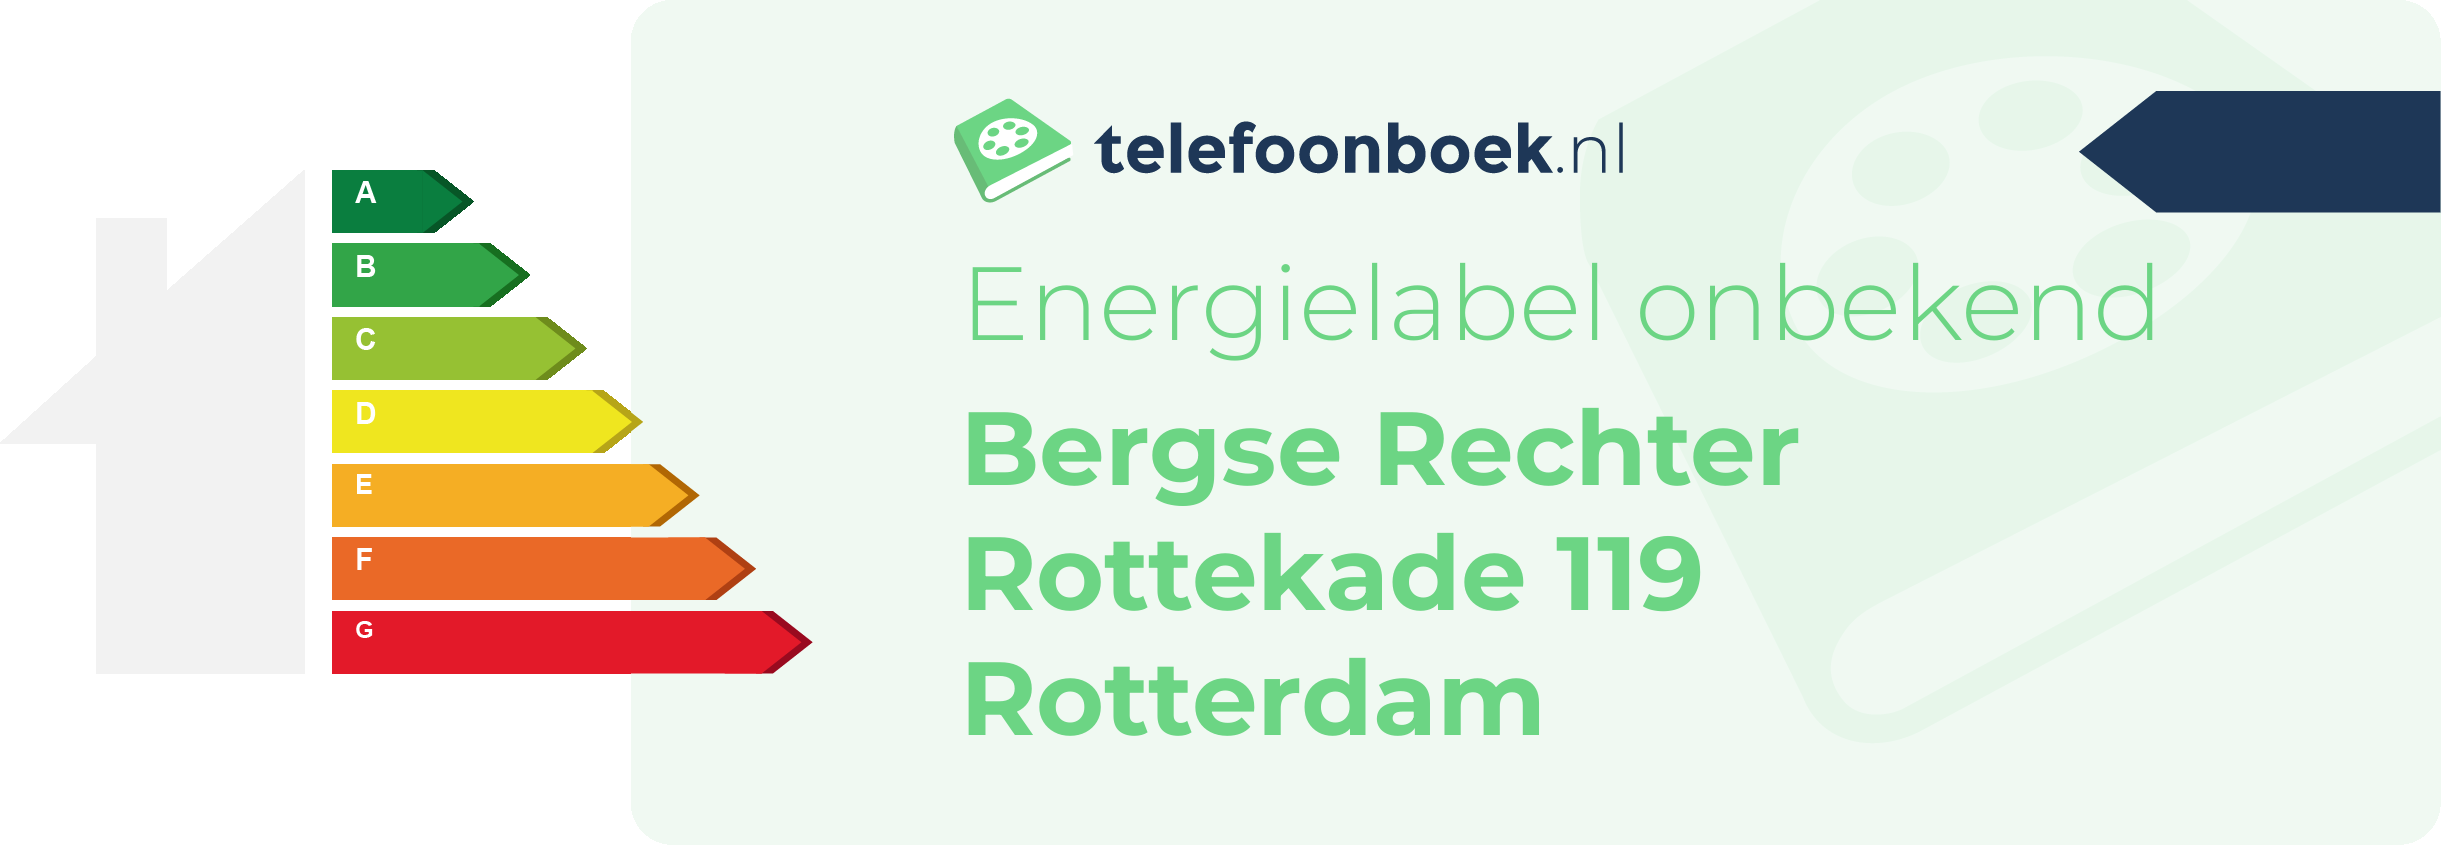 Energielabel Bergse Rechter Rottekade 119 Rotterdam